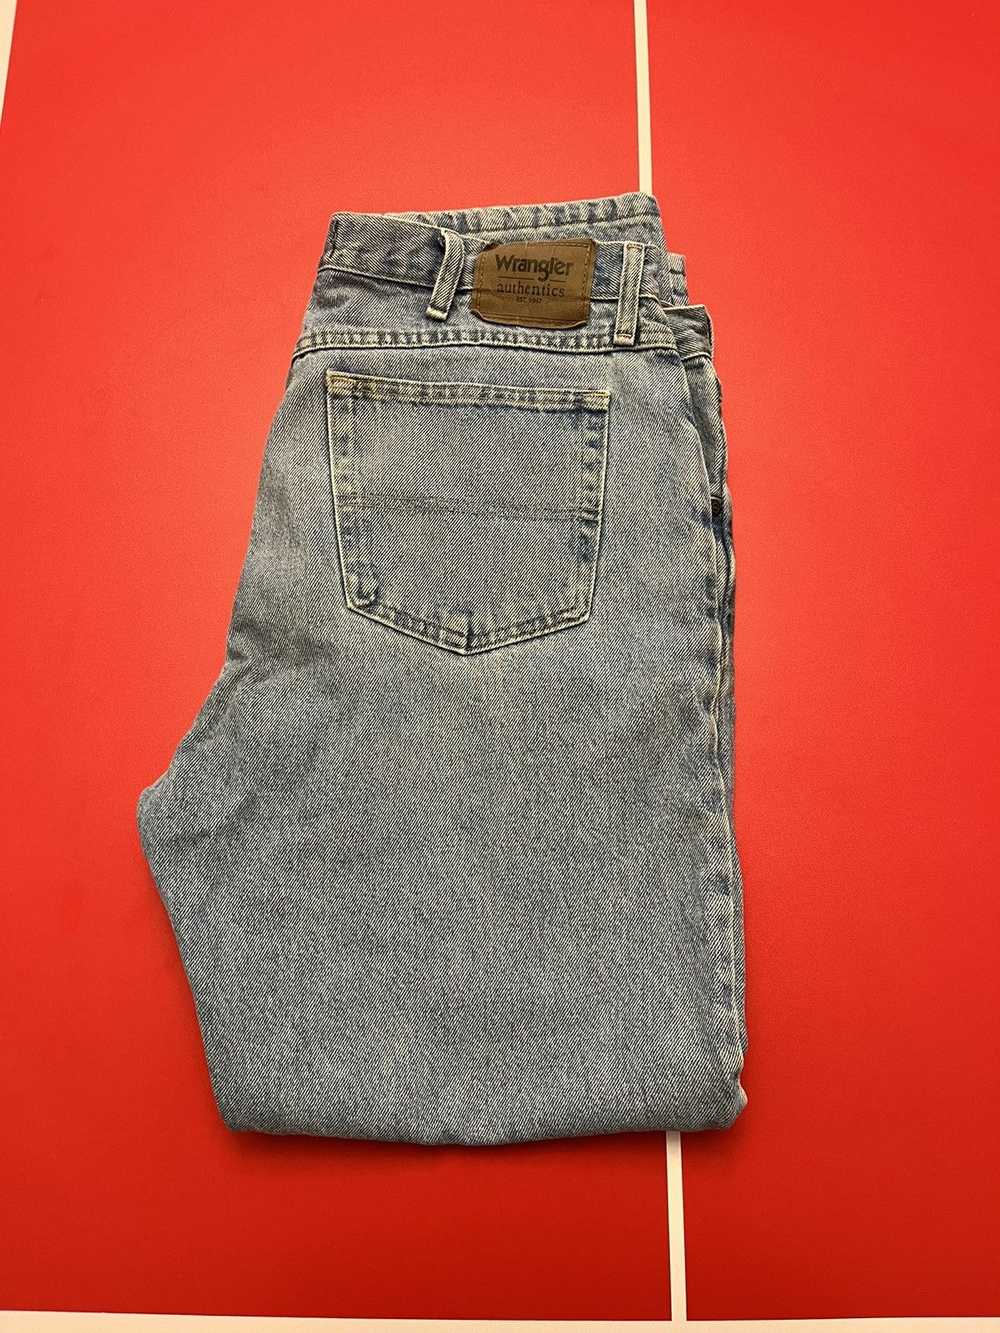 Wrangler Wrangler jeans - image 2